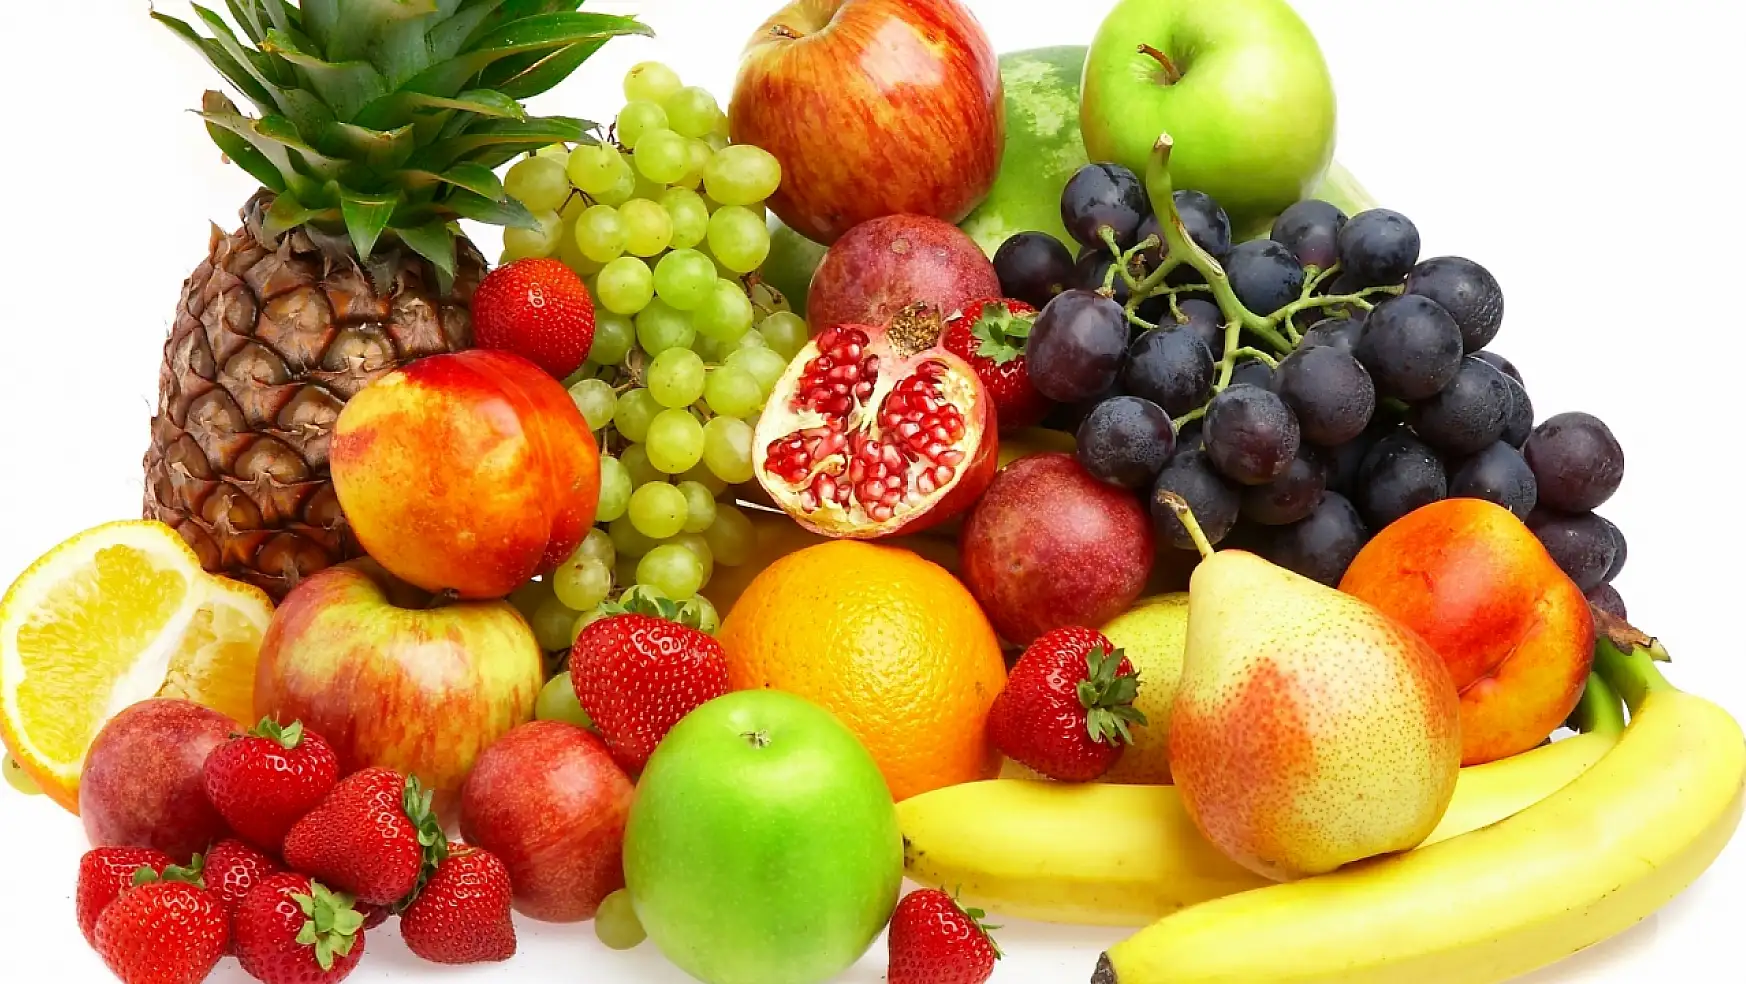 Meyveler: Meyvelerin İnsan Sağlığına Yararları, Zararları! Meyveler Hangi Durumlarda Zararlıdır?